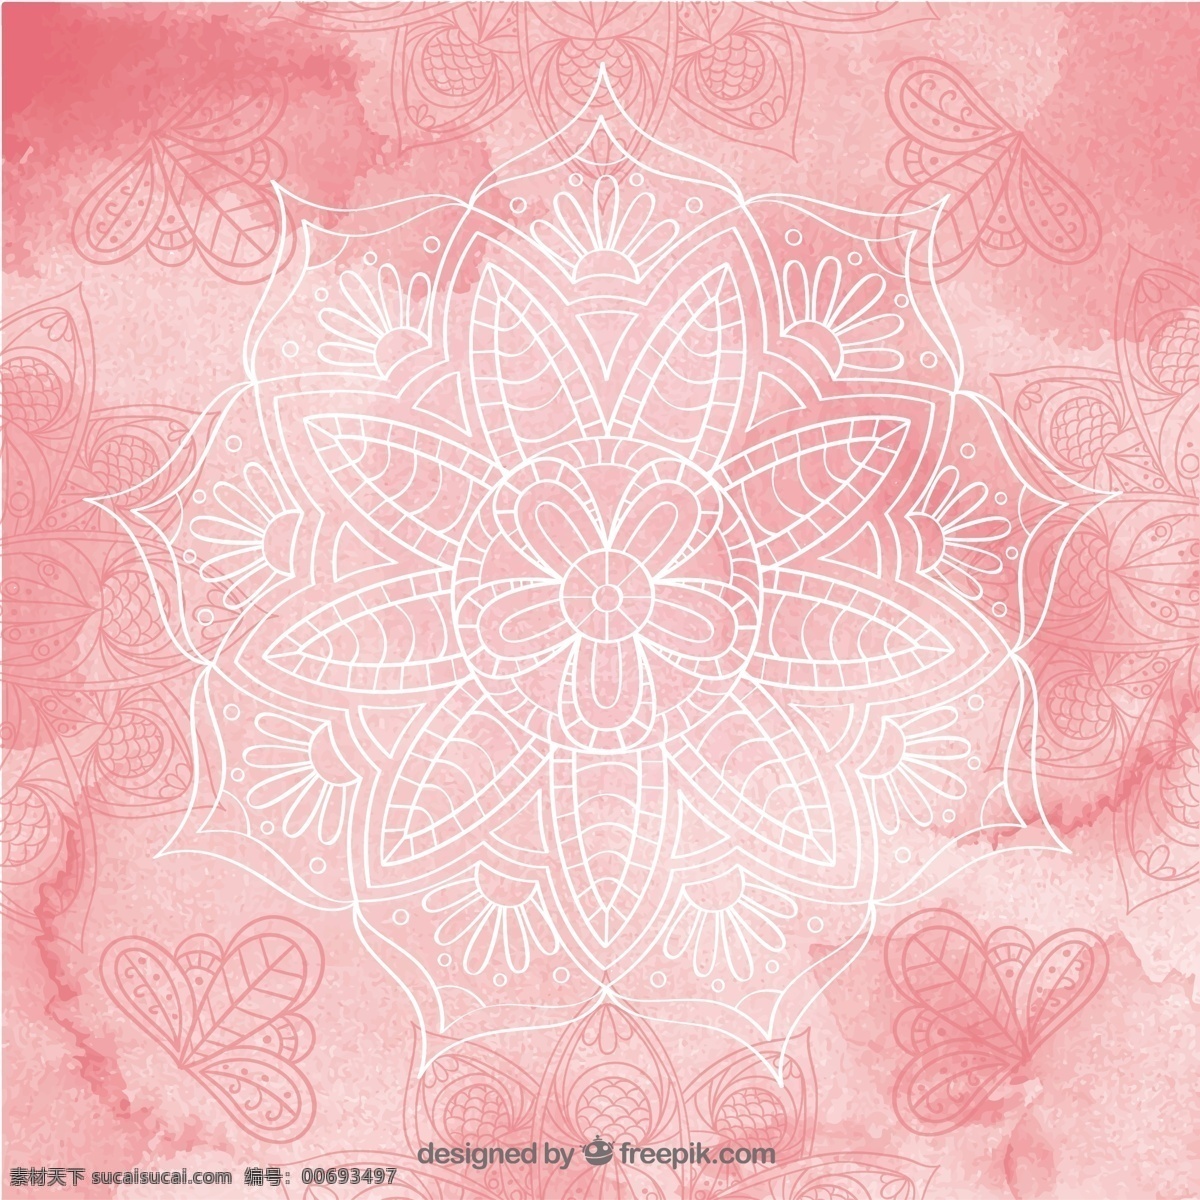 水彩 手绘 曼荼罗 粉红色 背景 花卉 抽象 手 装饰 曼陀罗 水彩花 飞溅 形状 装饰品 阿拉伯文 印度 墨水